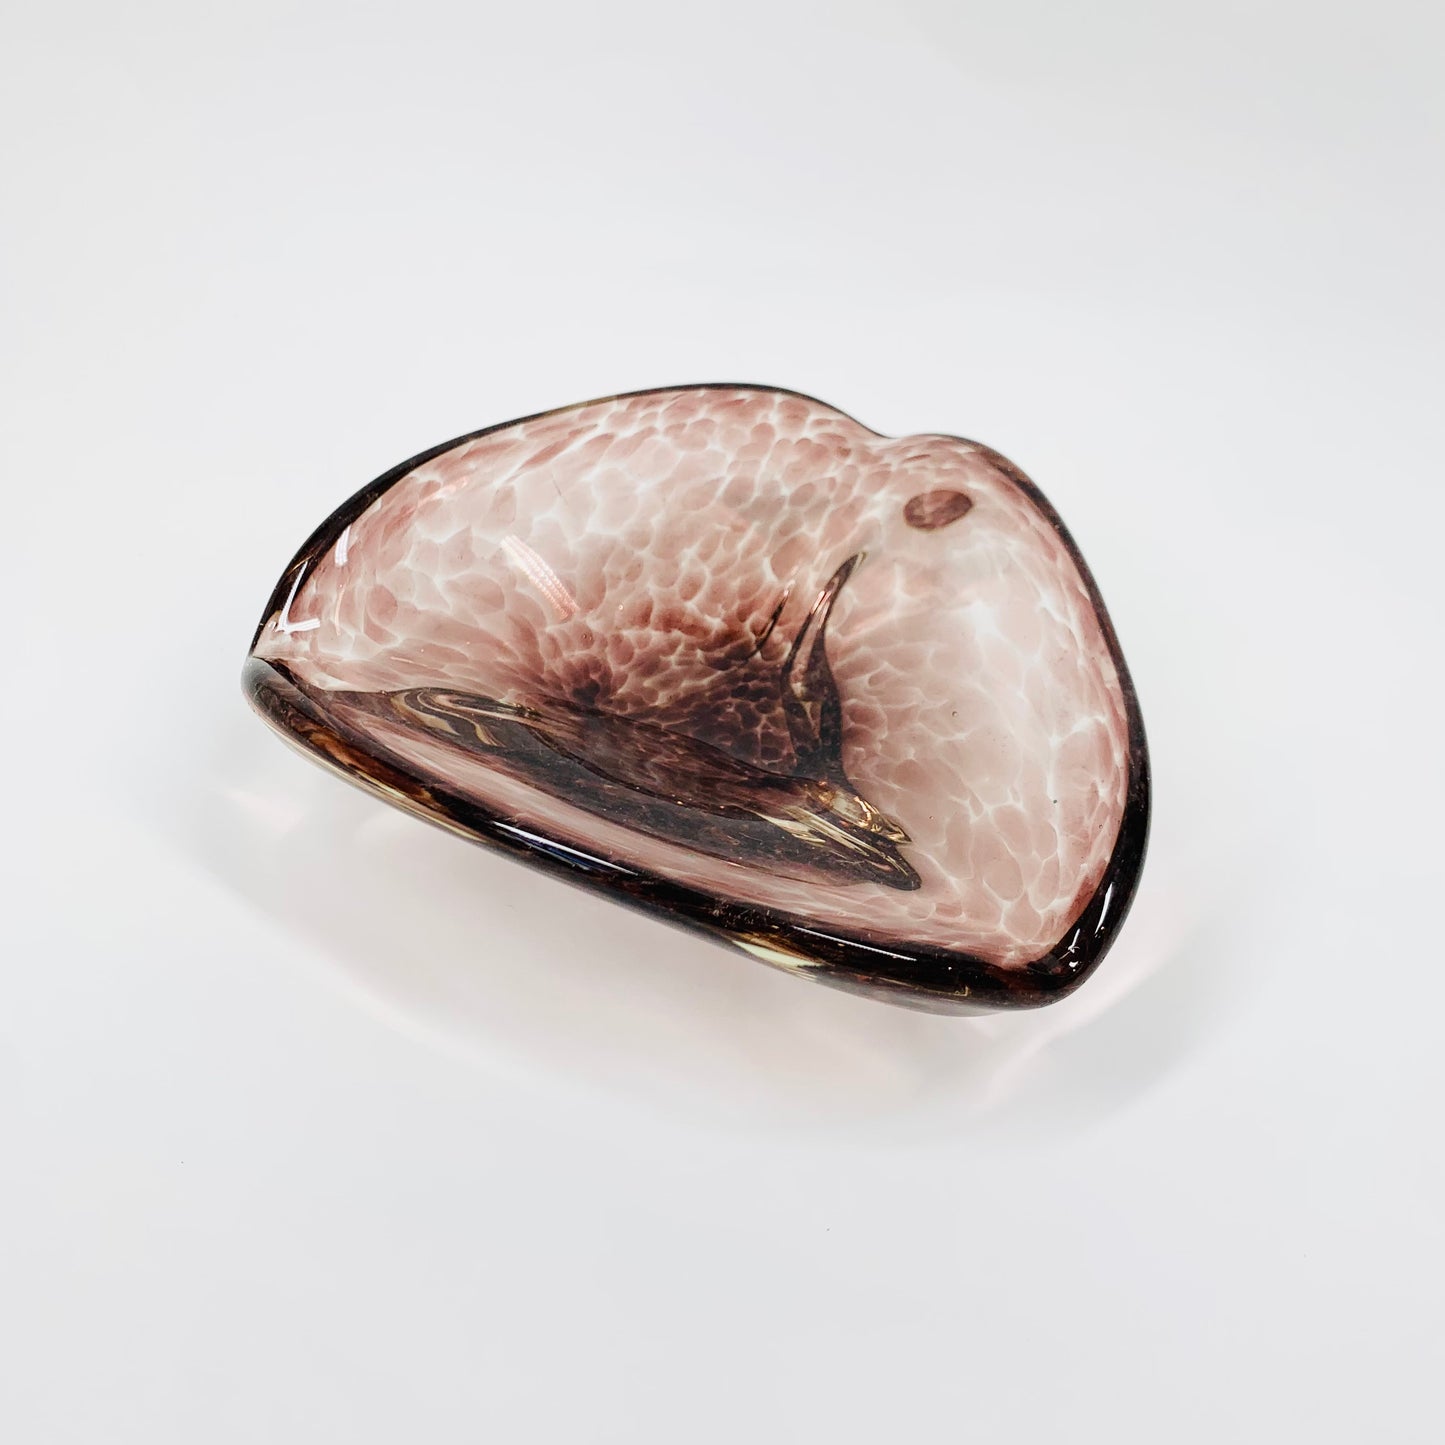 Rare MCM Murano mottled amethyst glass trefoil ashtray